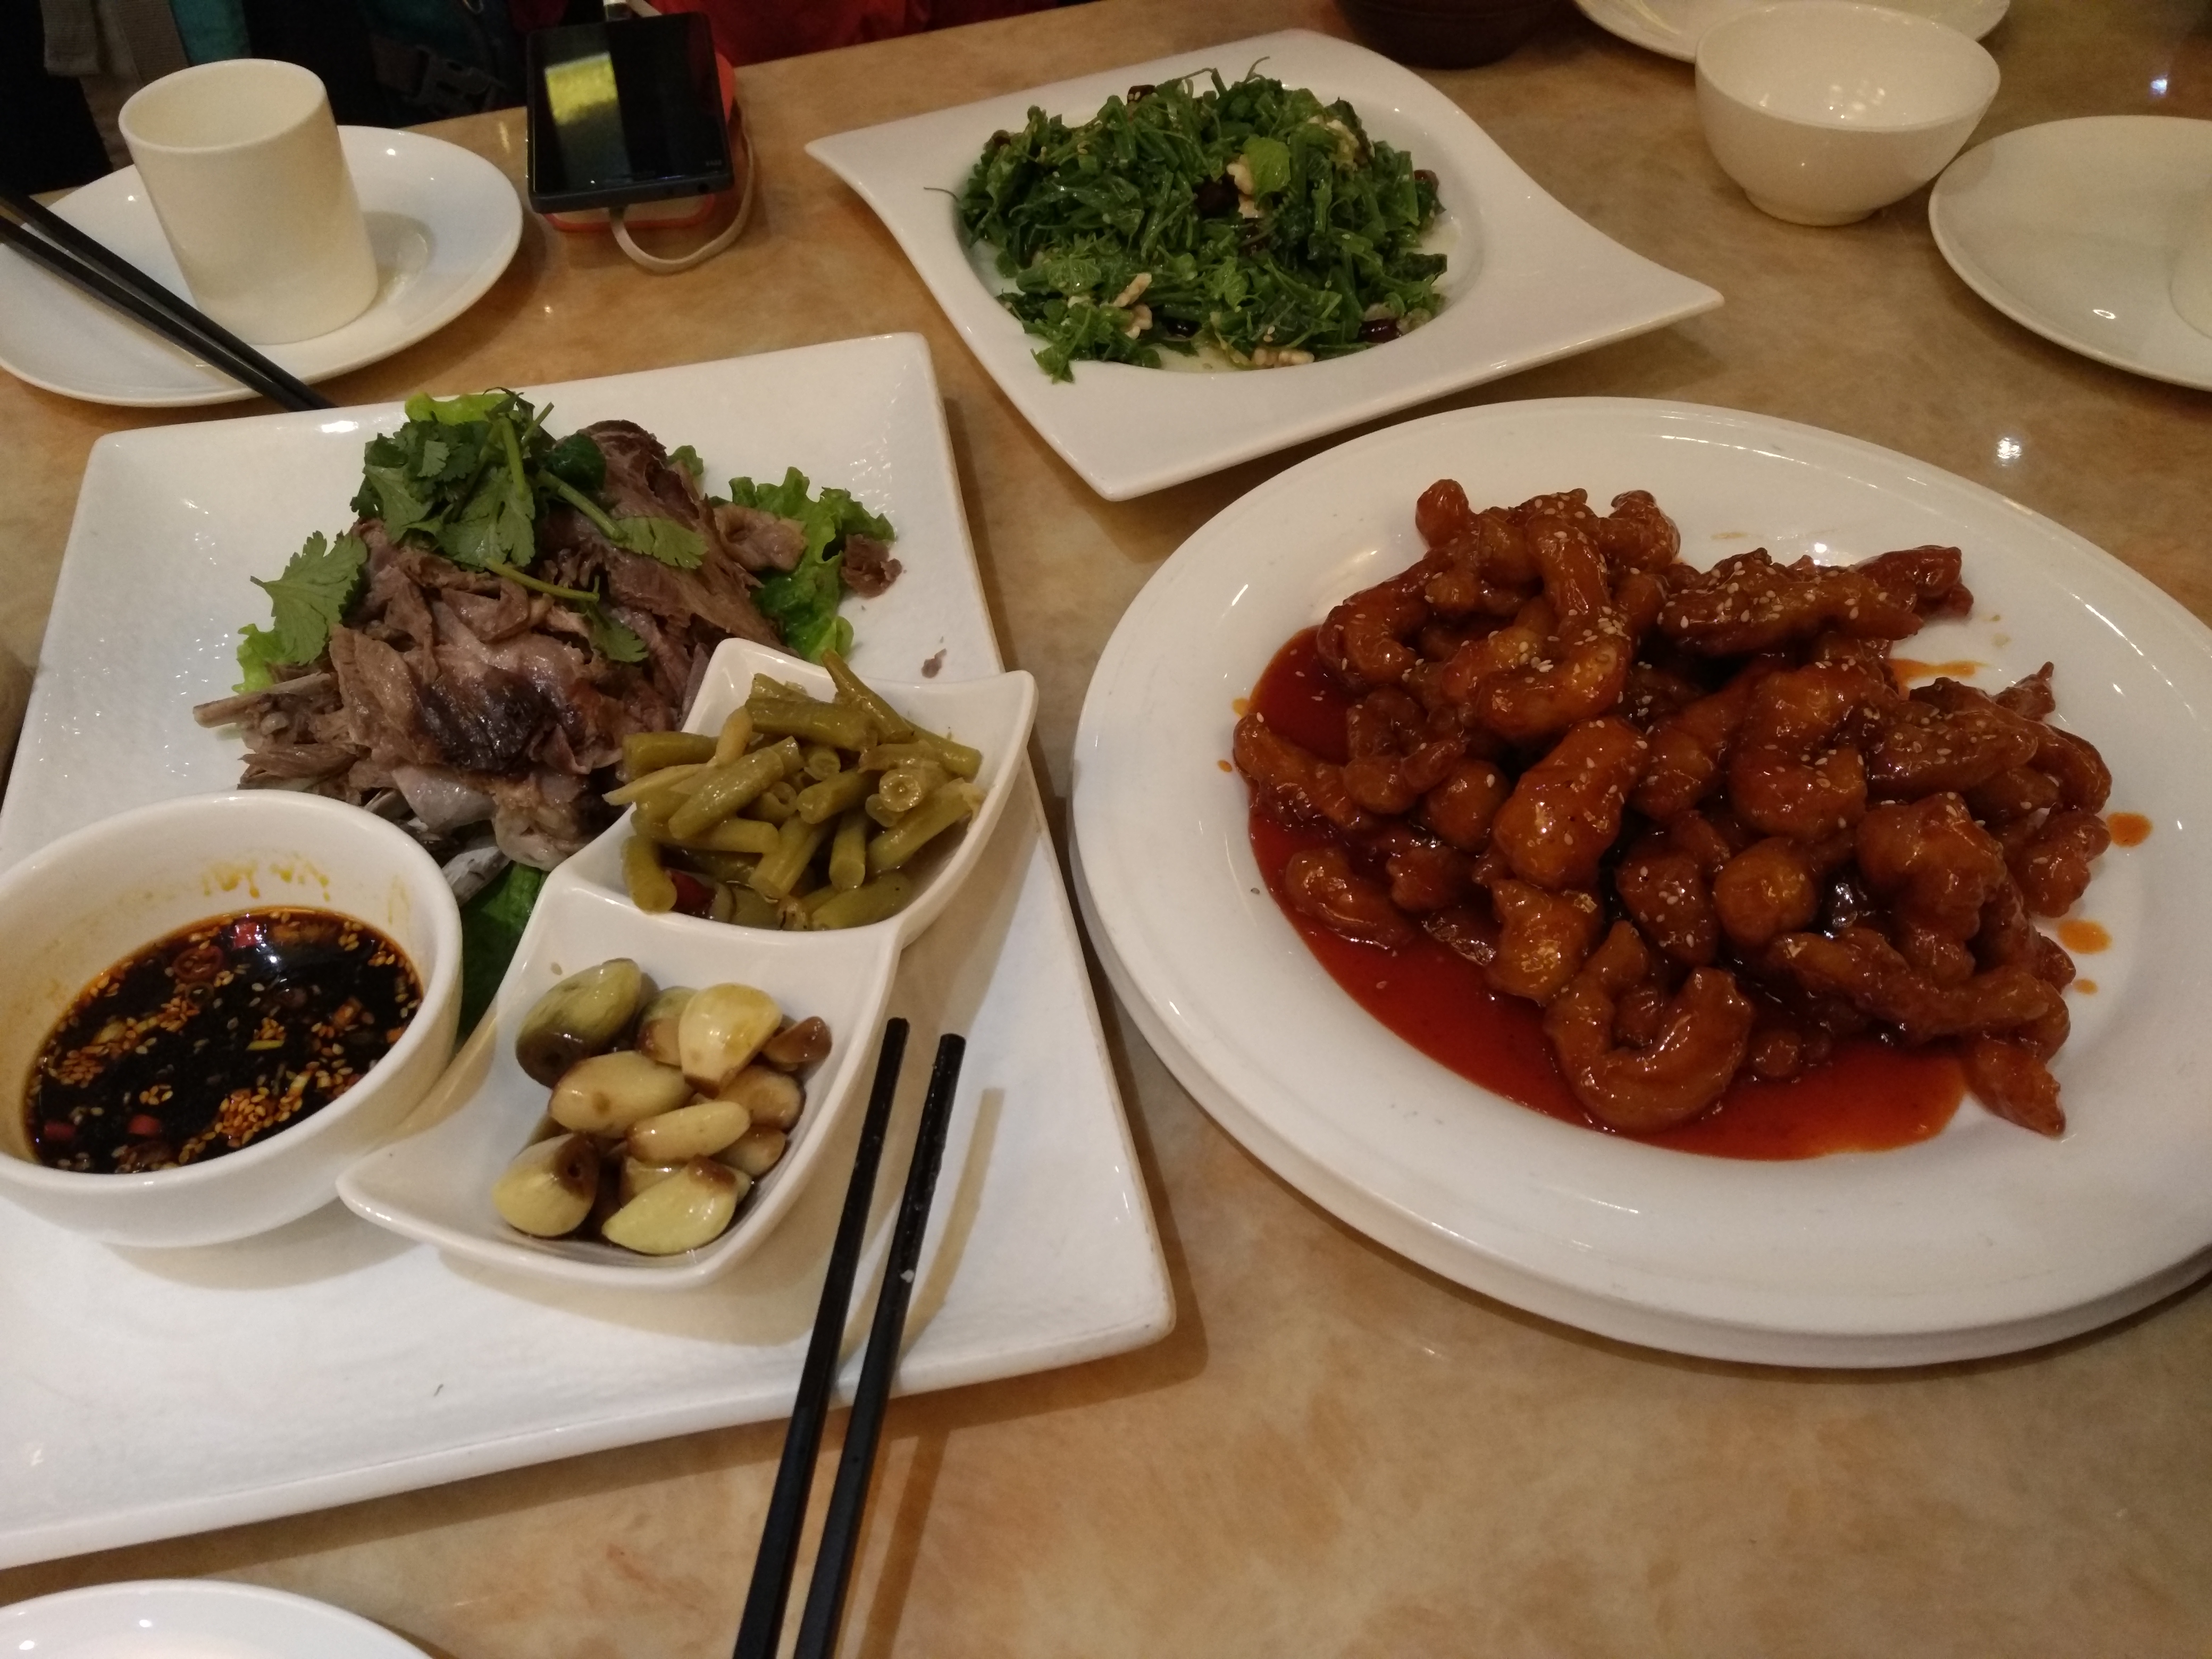 小酥肉是陕西的家常菜,听名字就知道是以肉质绵软为主要卖点,挺适合下